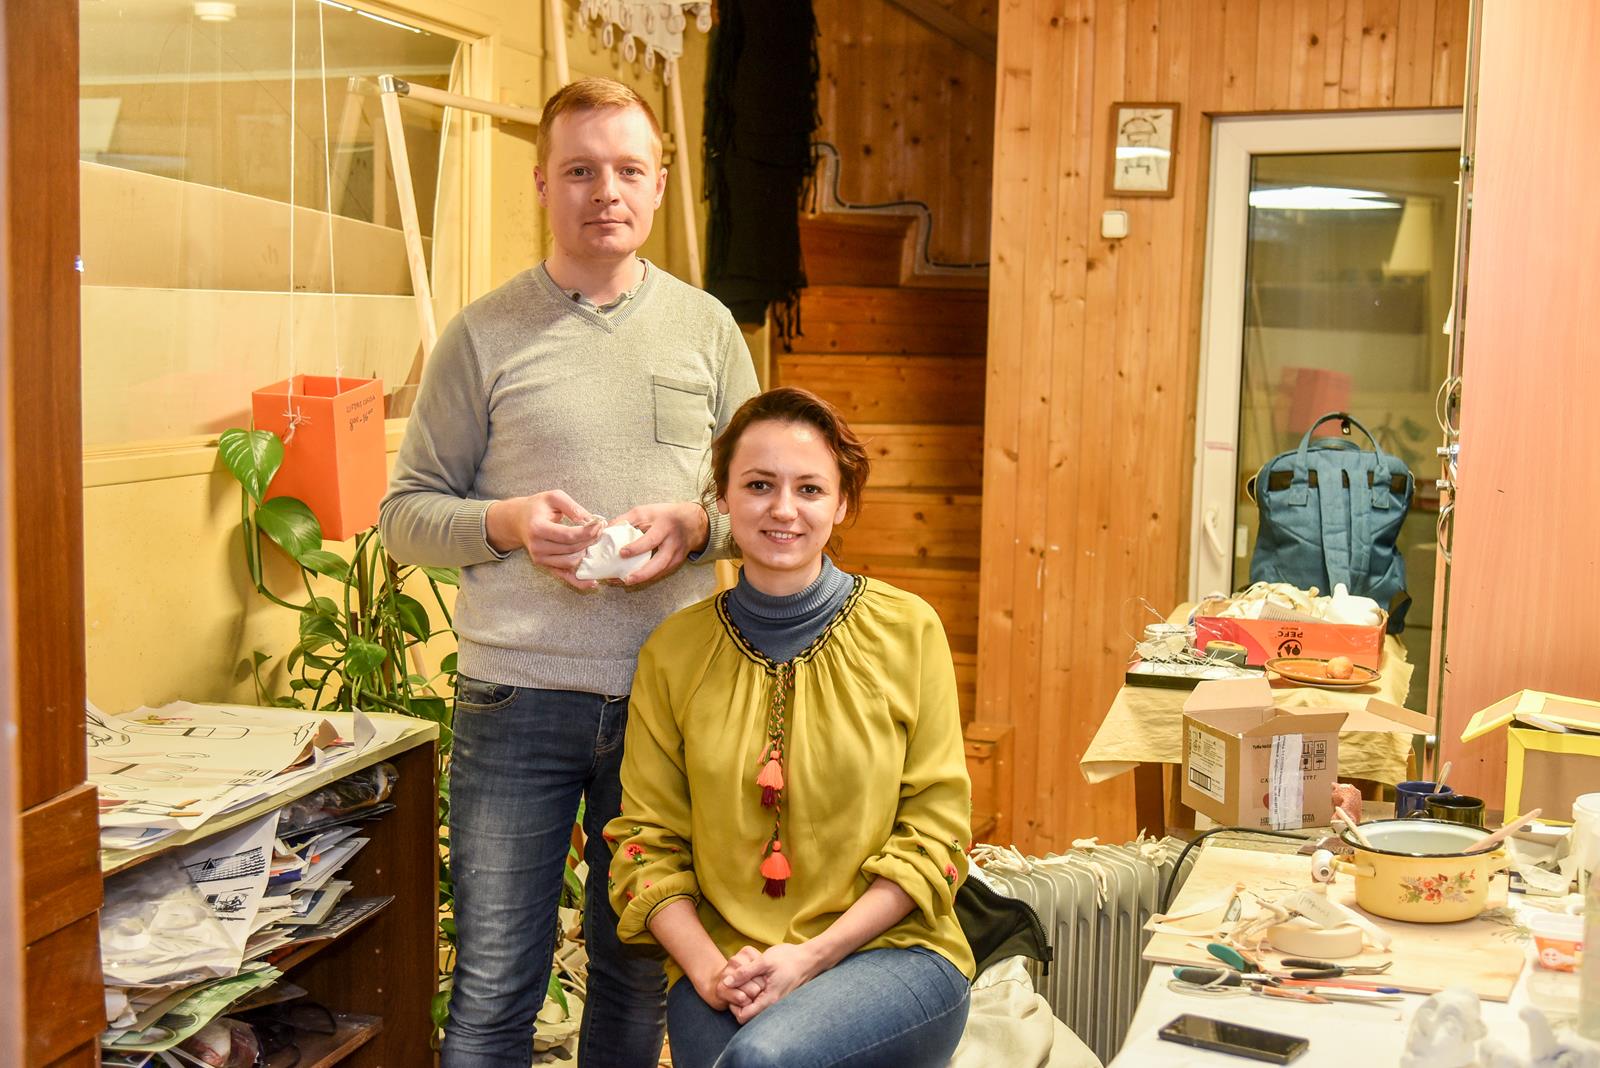 Tik praėjusių metų pabaigoje į Lietuvą atvažiavę ir Panevėžio lėlių vežimo teatre pradėję dirbti ukrainiečiai Oksana Rossol ir Aleksandras Serhijenko vis dar pratinasi prie naujo gyvenimo skonio ir ritmo.